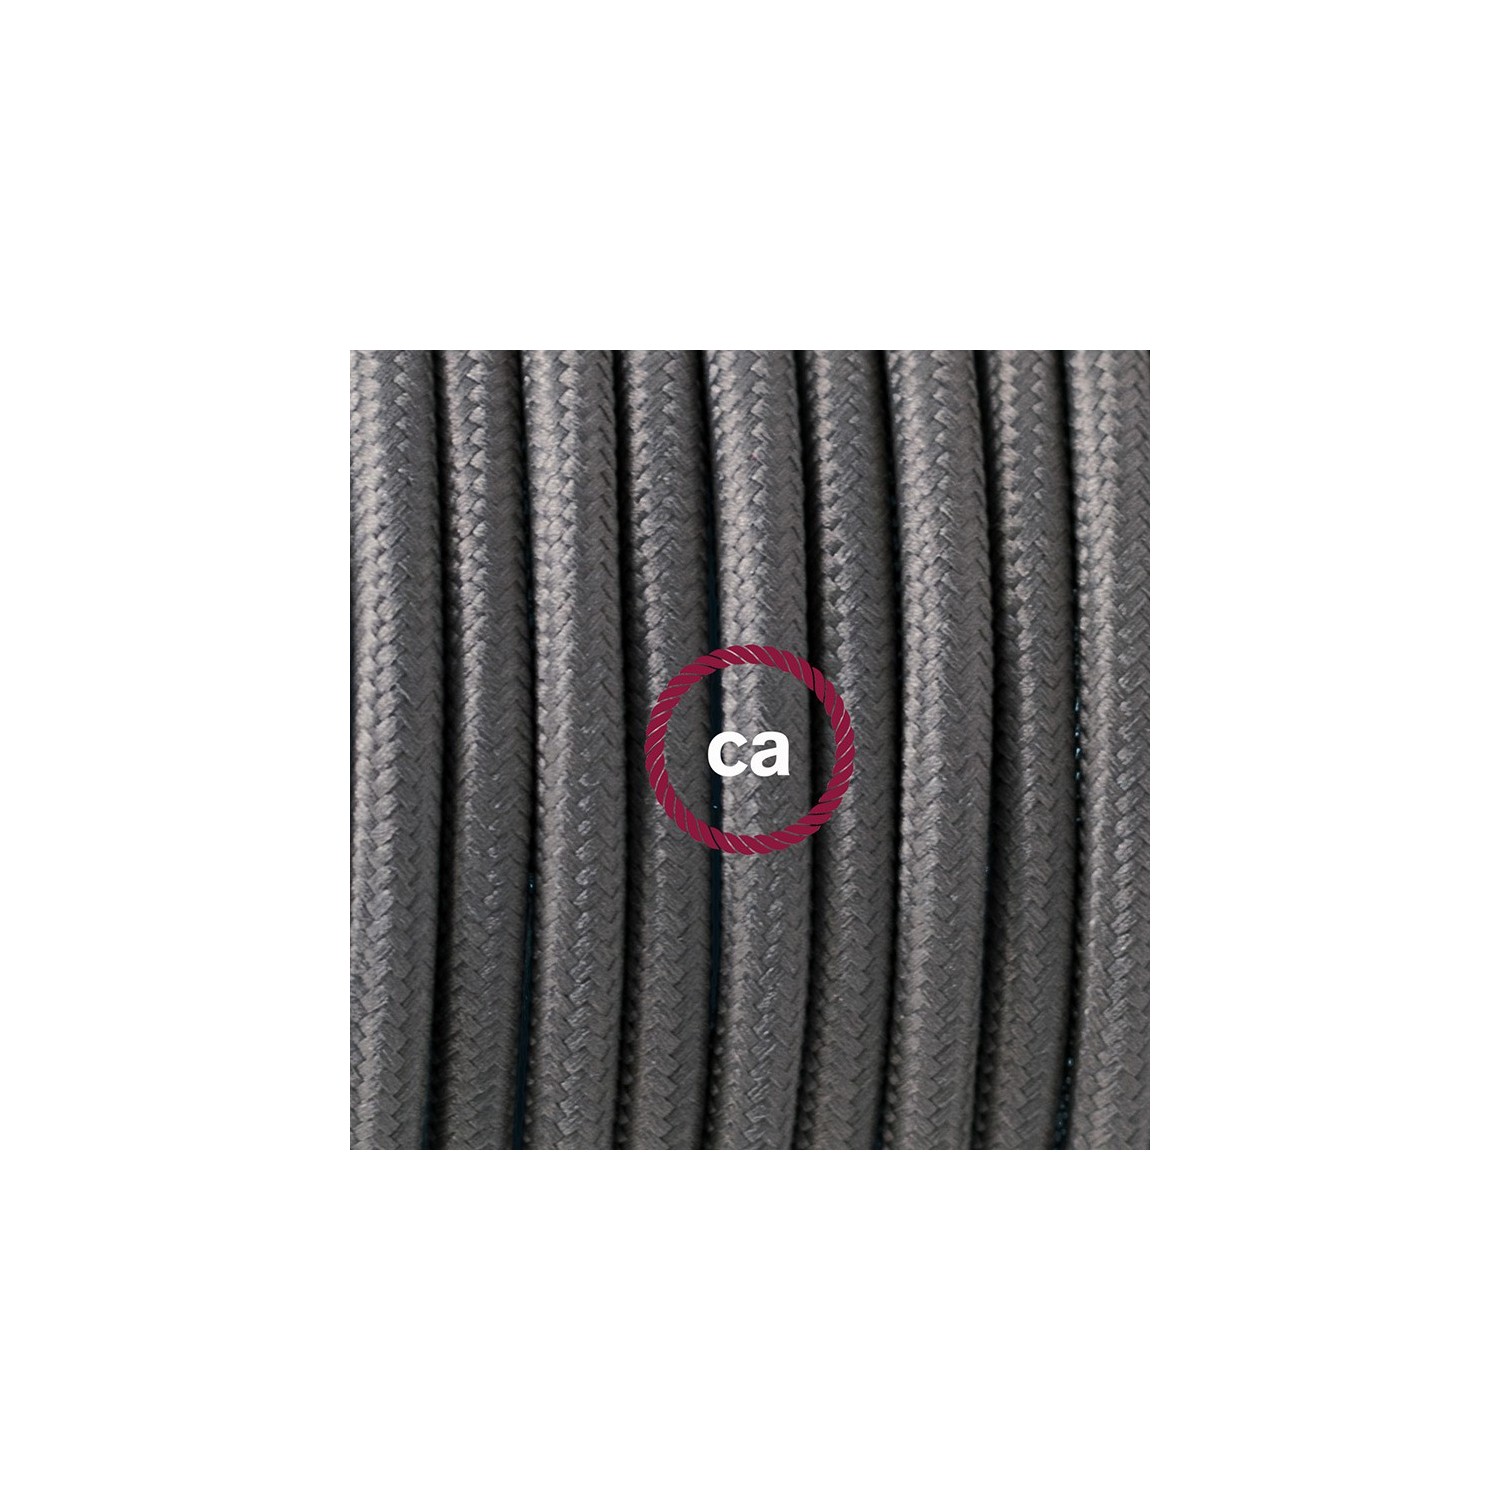 Ronde flexibele textielkabel van viscose met schakelaar en stekker. RM03 - grijs 1,80 m.